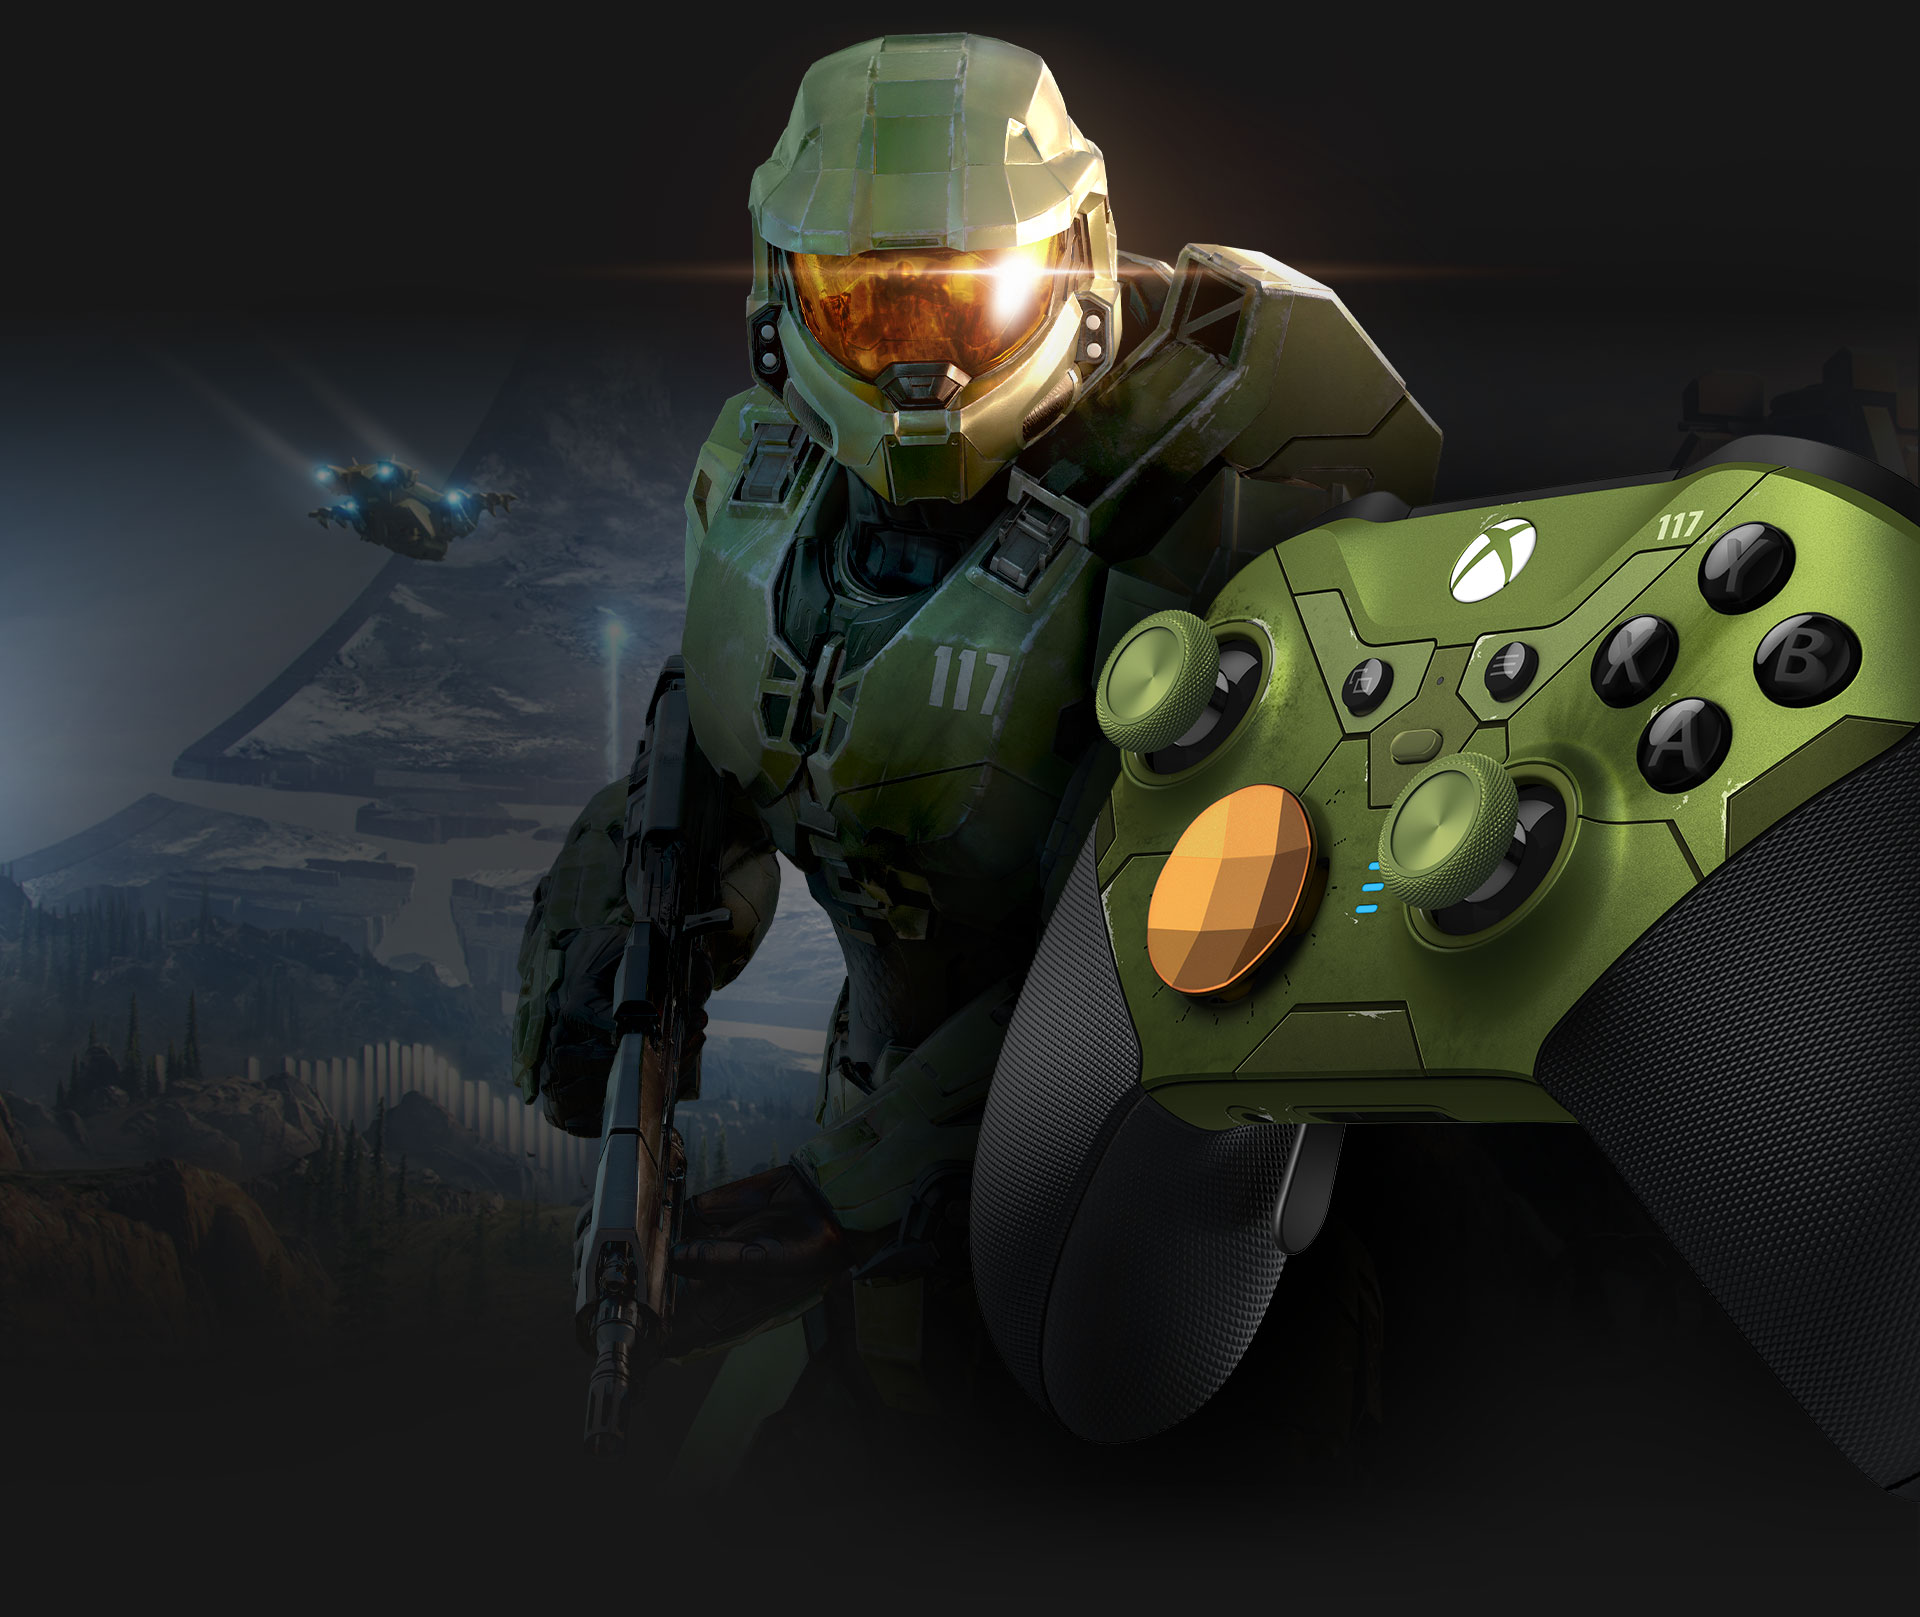 Xbox Elite trådlös handkontroll Series 2 Halo Infinite med Master Chief sedd från vänster